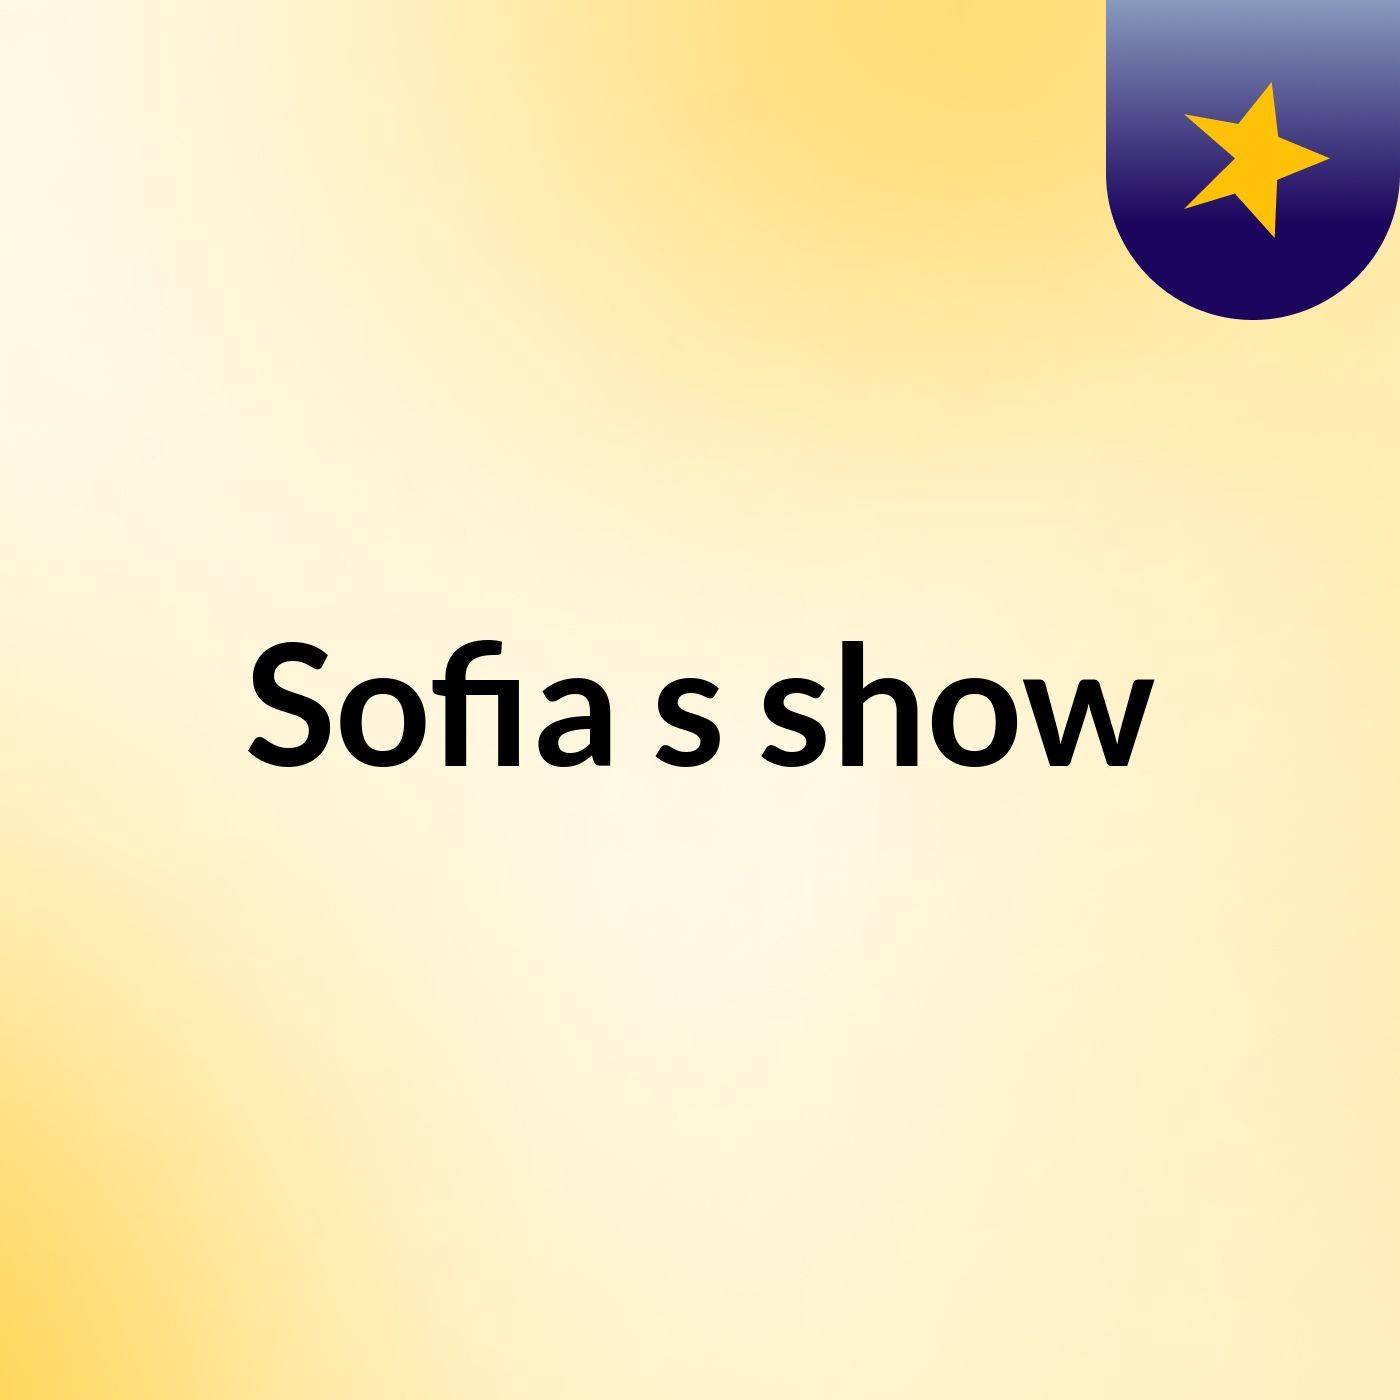 Sofia's show